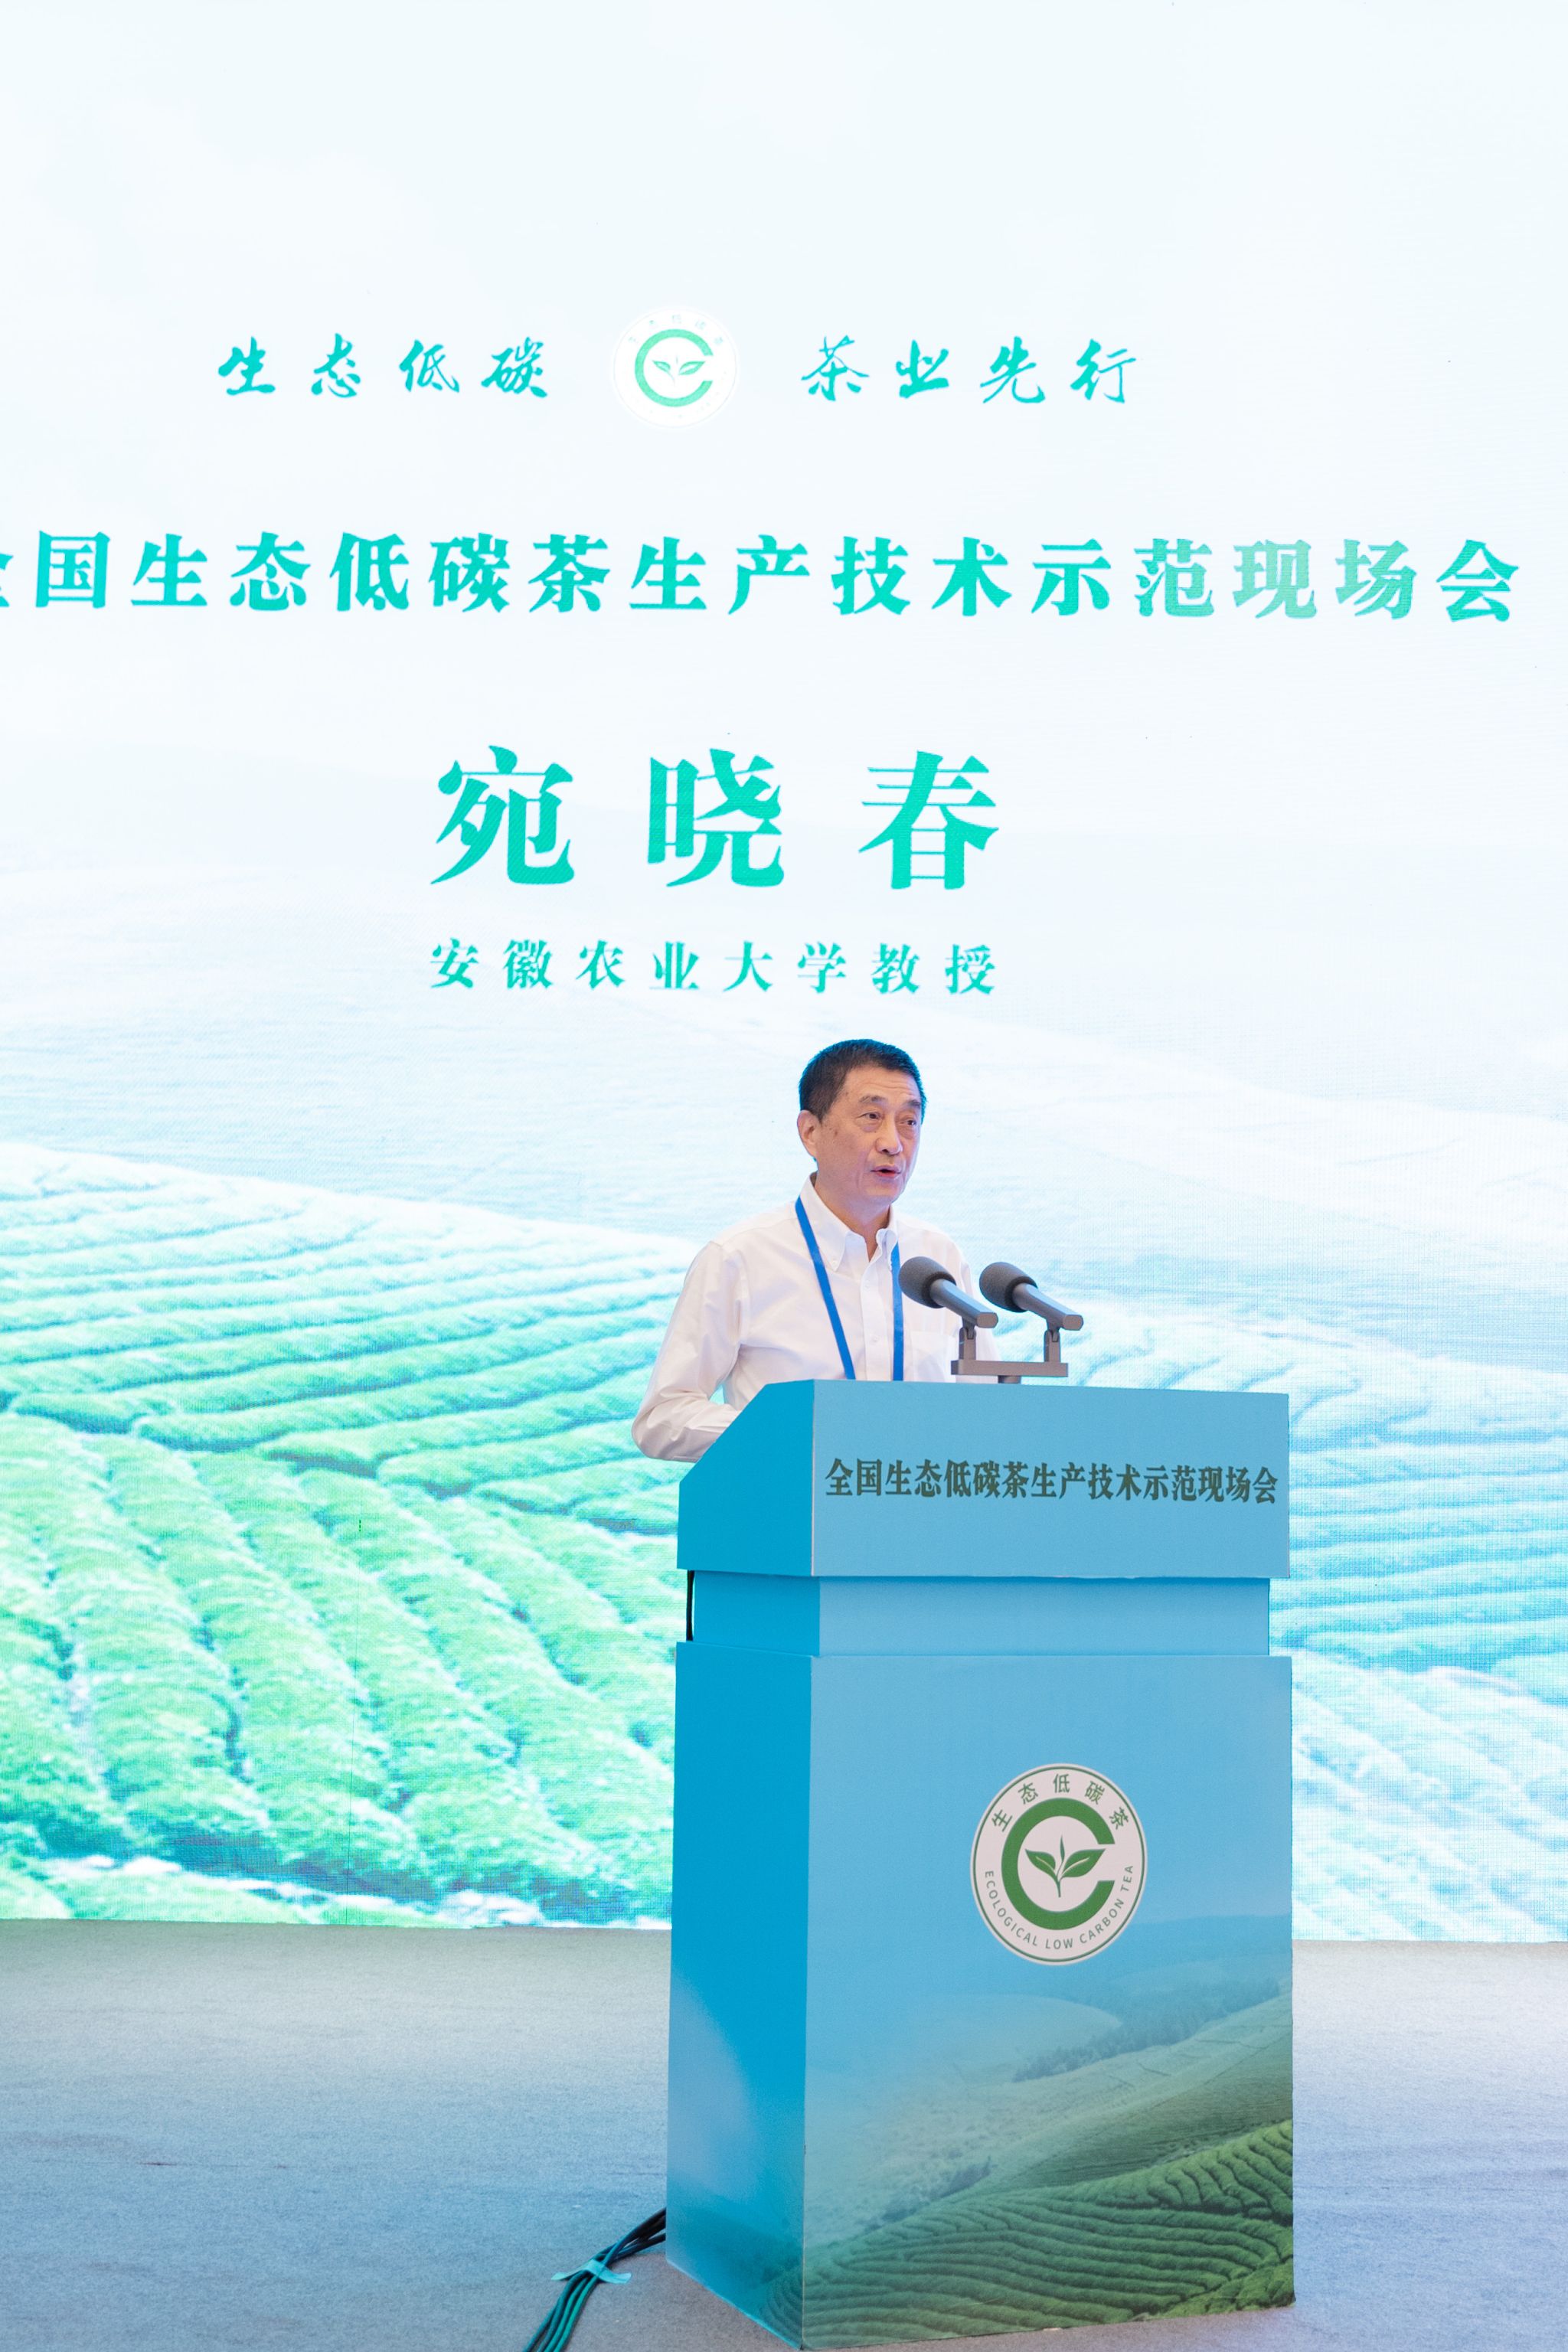 宛晓春教授应邀在全国生态低碳茶生产技术示范现场会作报告